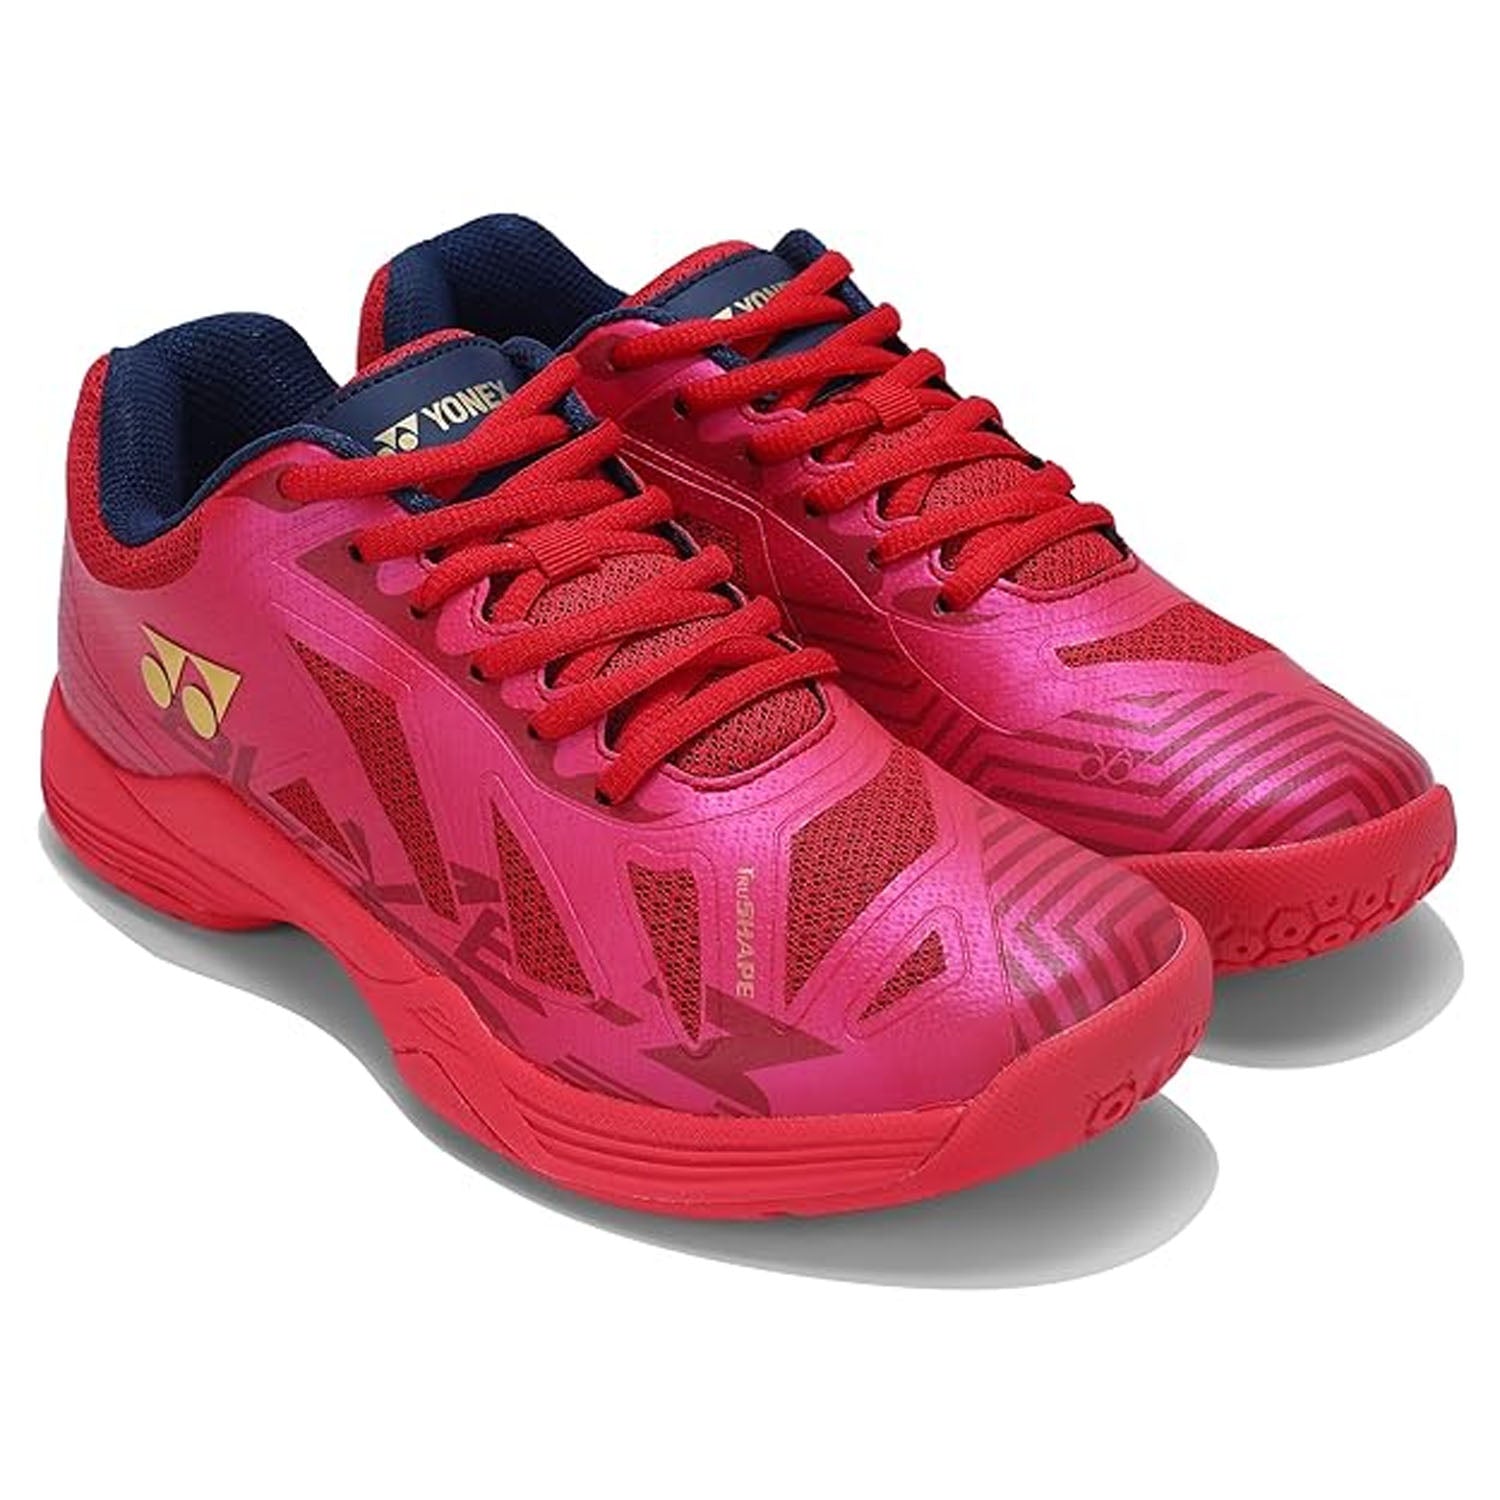 Yonex Blaze 3 Men's Badminton Shoes - Best Price online Prokicksports.com